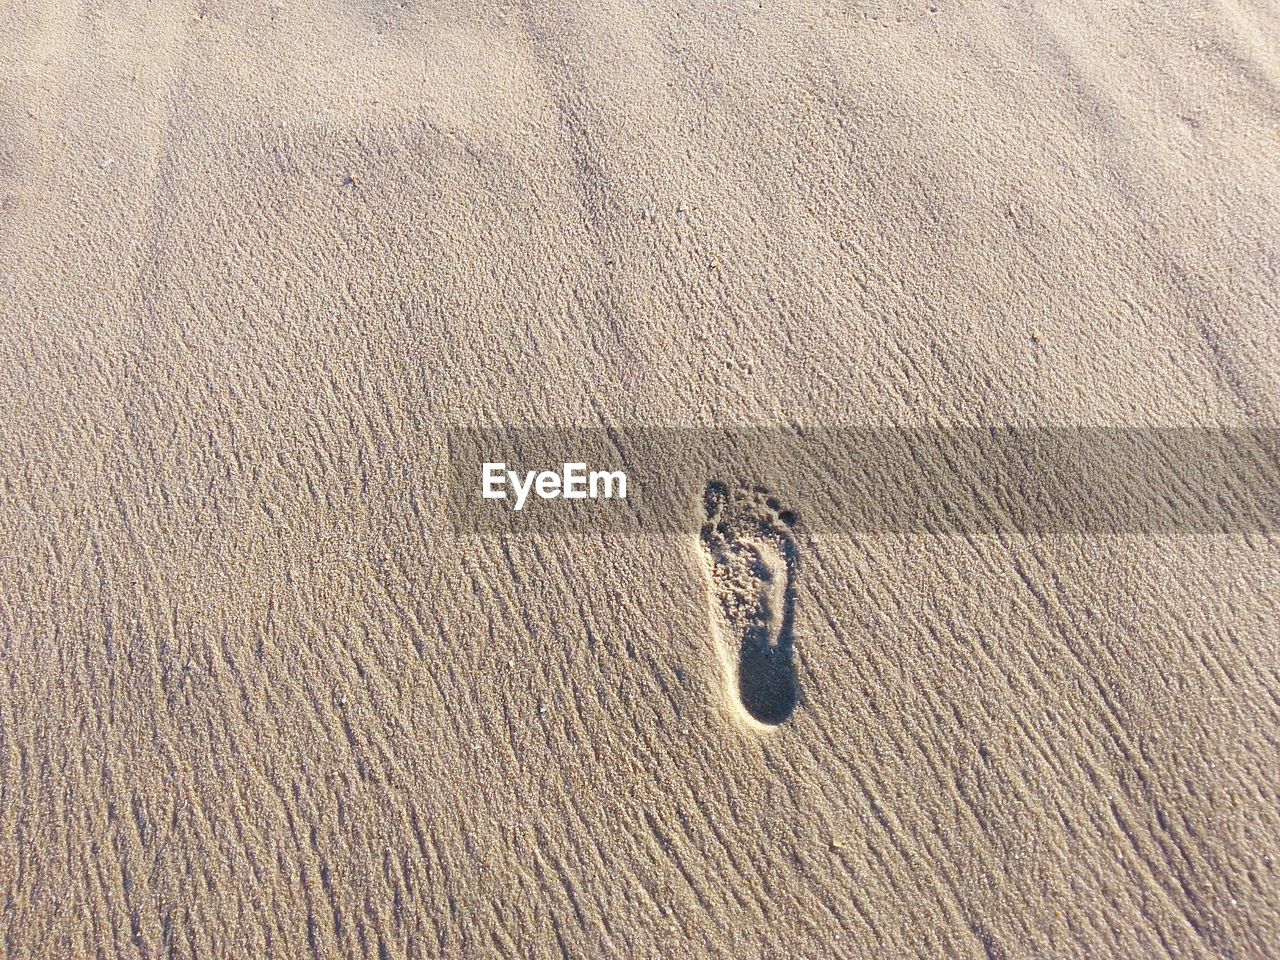 A footstep on beach sand